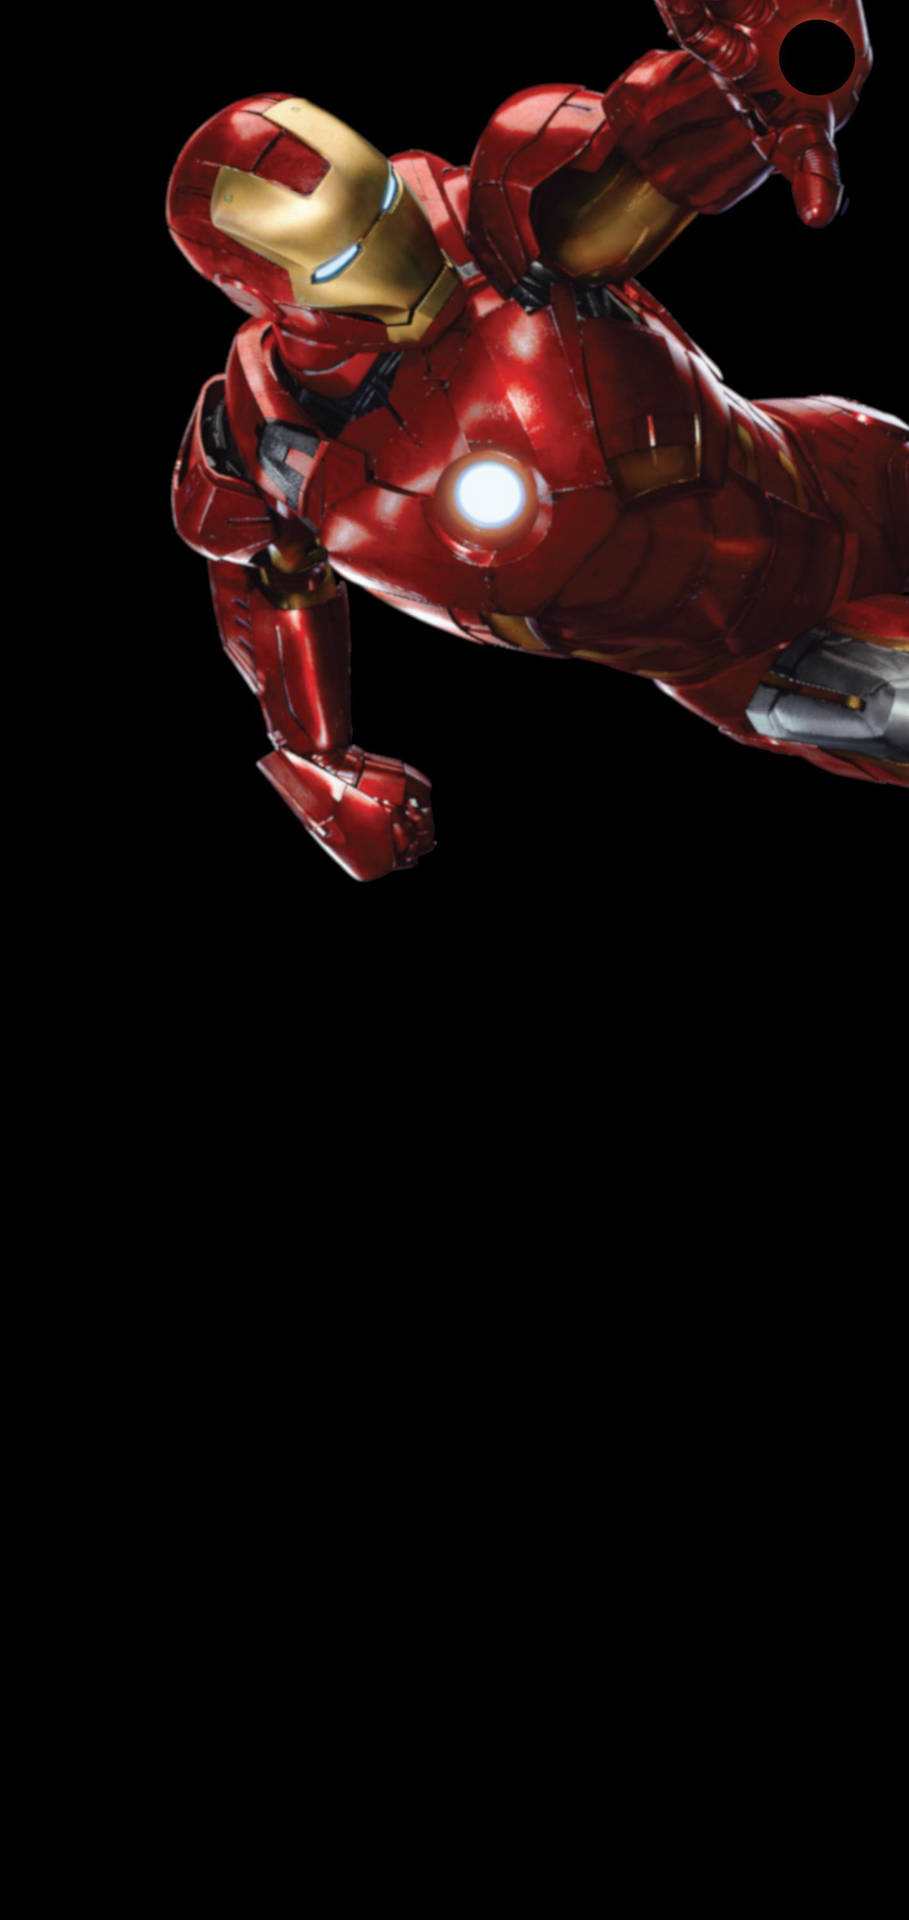 Fondode Pantalla Sencillo De Iron Man Para Teléfono. Fondo de pantalla